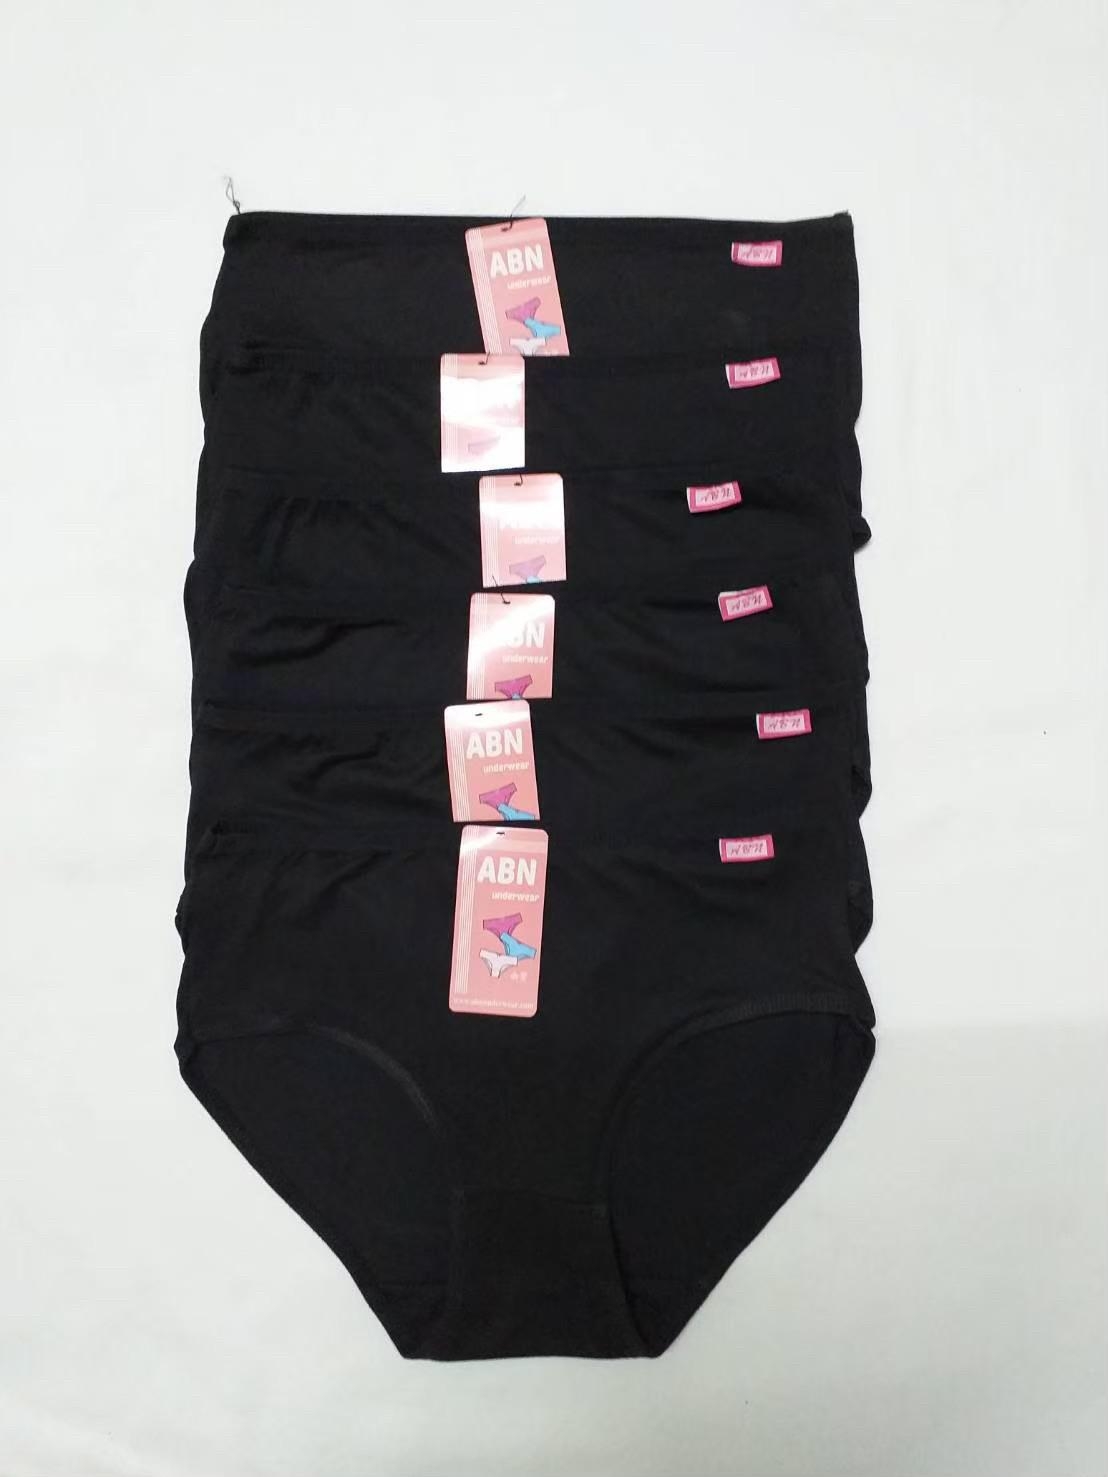 Bk แพค 1 ตัว สีดำ กางเกงในสตรี ขั้นต่ำ 3 ตัว เนื้อผ้านุ่ม ลื่น ใส่สบาย คุณภาพดี ราคาถูก โรงงานมาเองจ้าาาา Black Panties Underwear 168TopShop4289 ถูกสุดในไทย